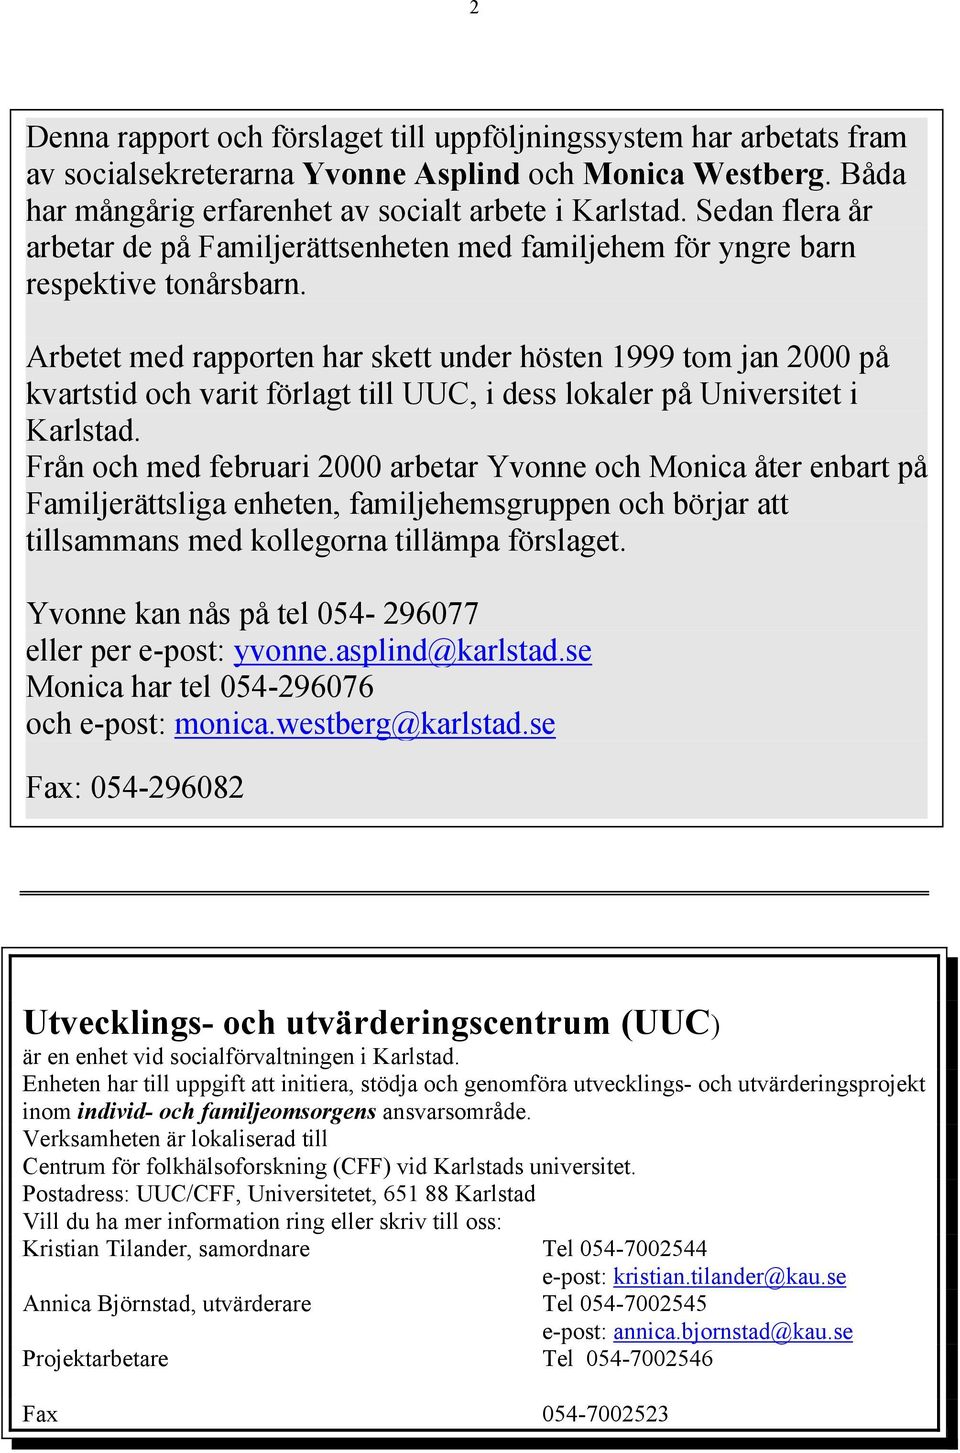 Arbetet med rapporten har skett under hösten 1999 tom jan 2000 på kvartstid och varit förlagt till UUC, i dess lokaler på Universitet i Karlstad.